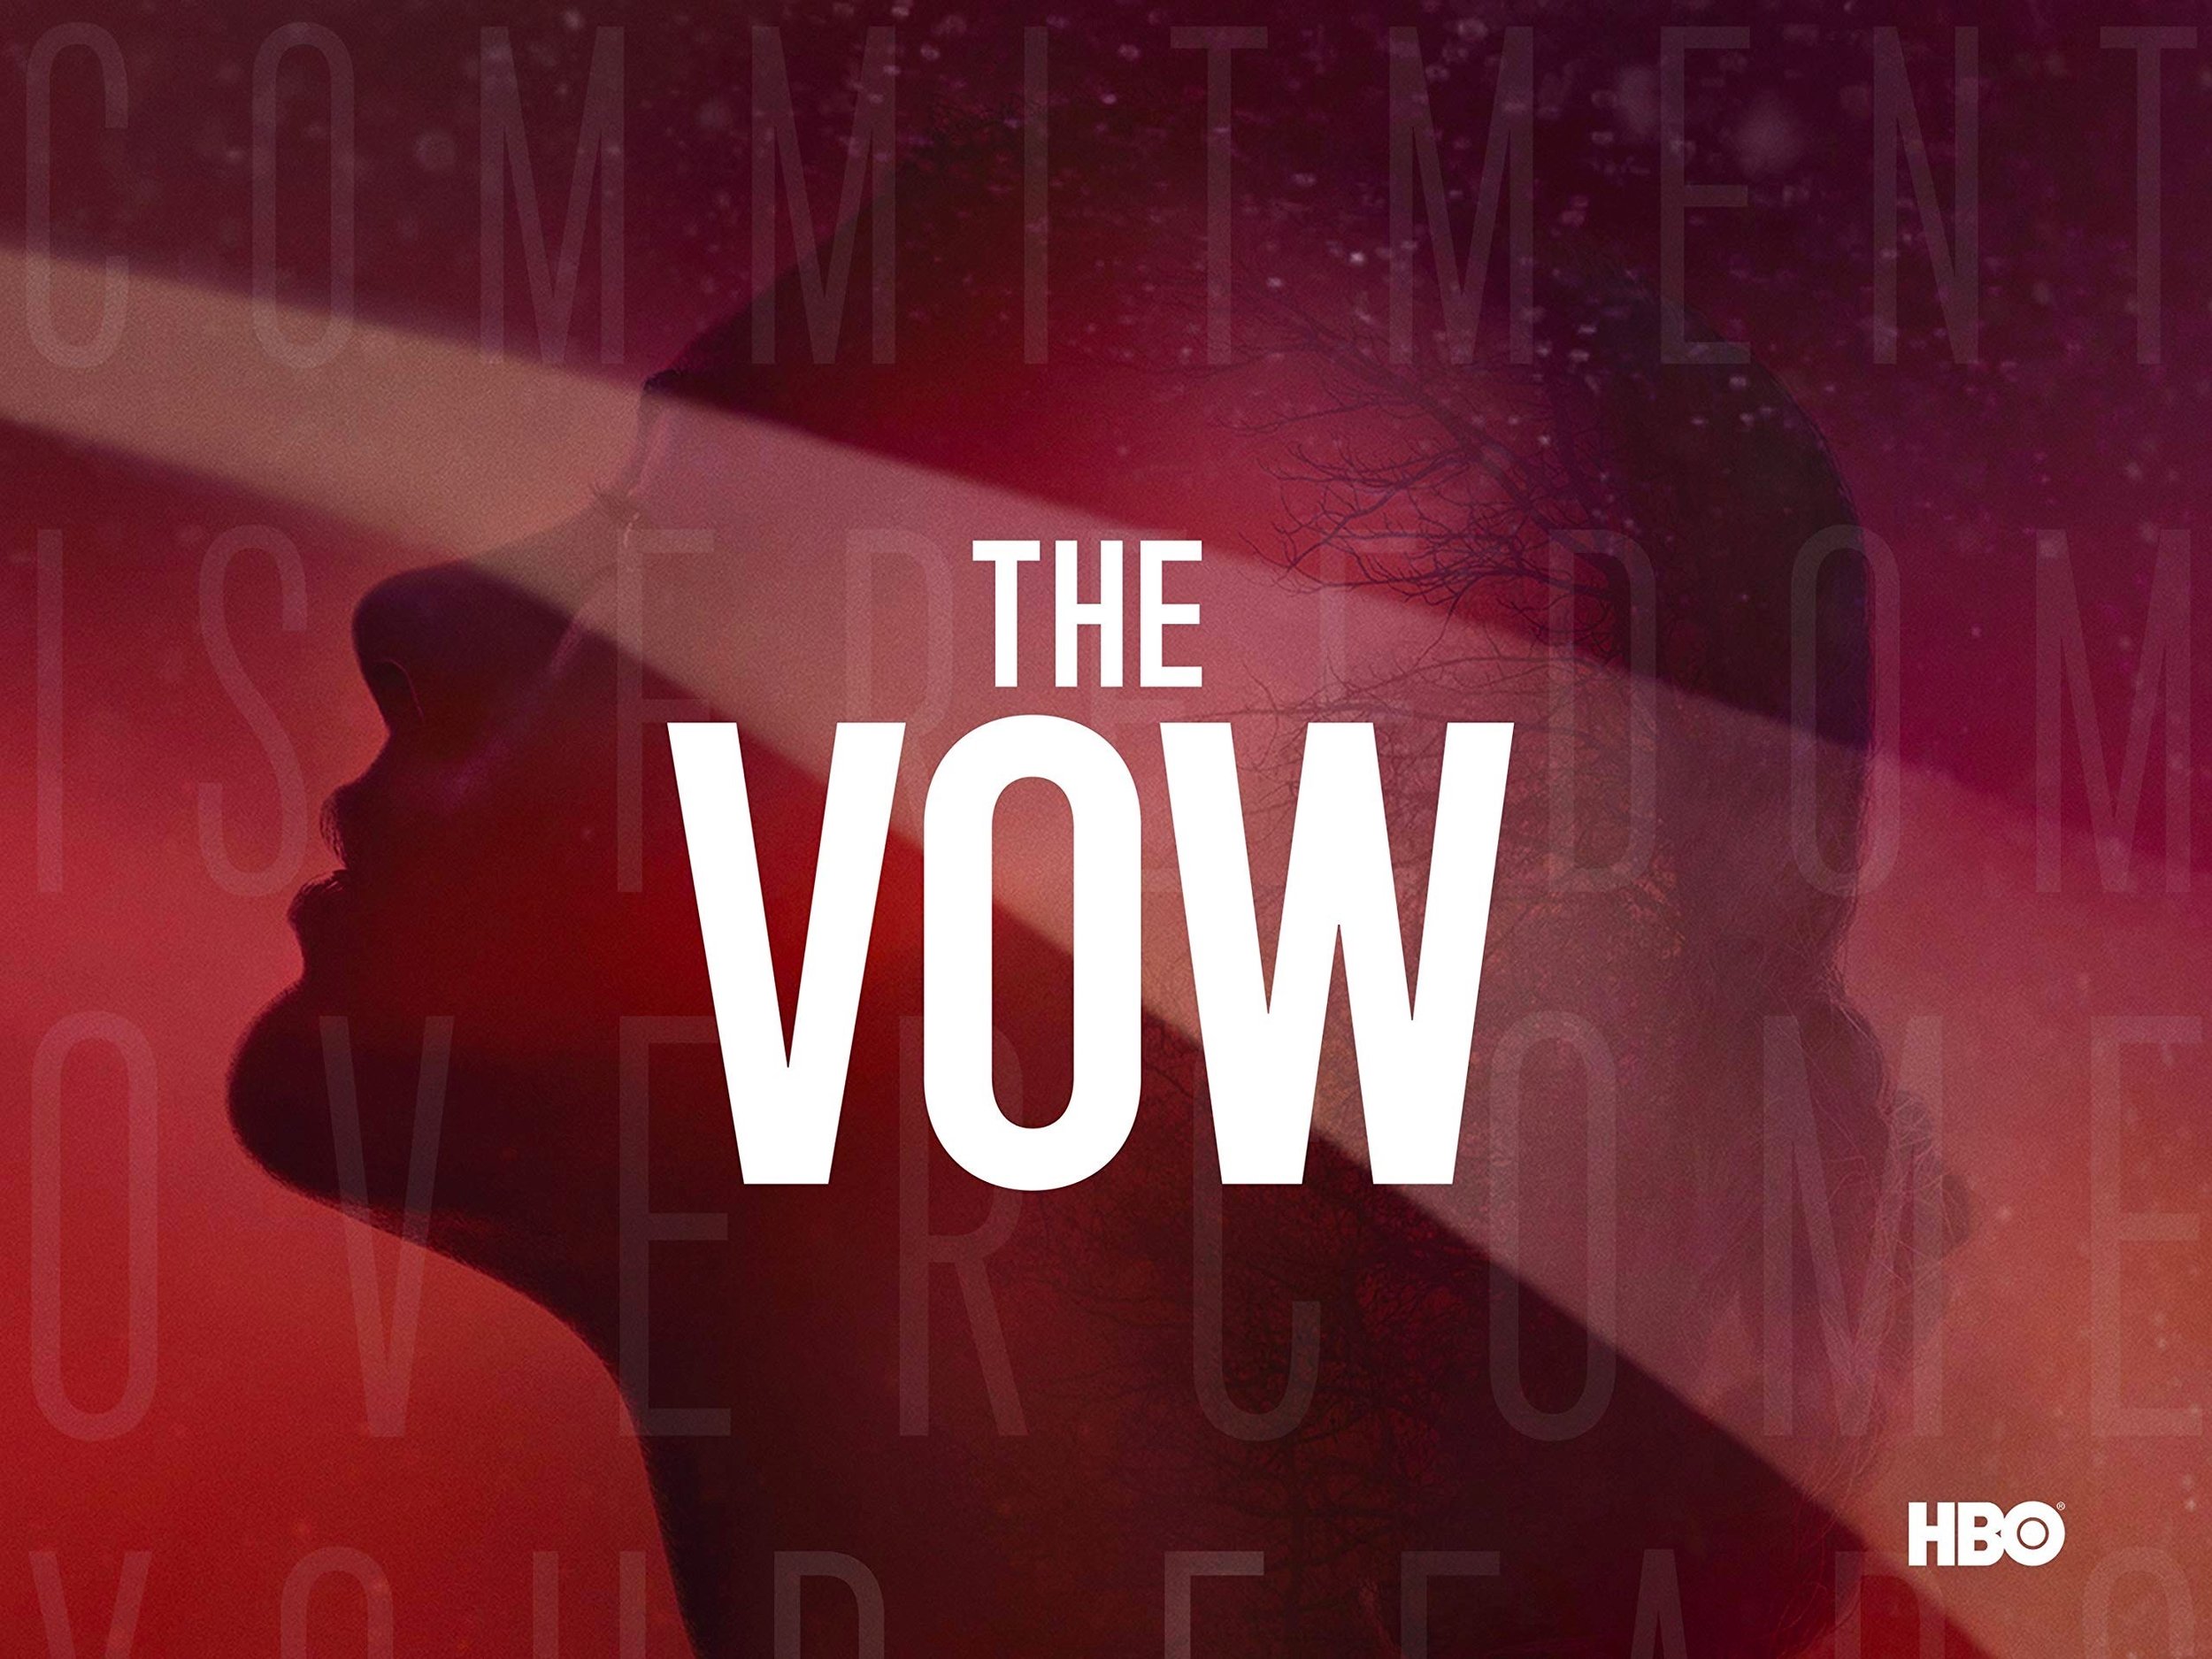 The Vow - Bits Sola